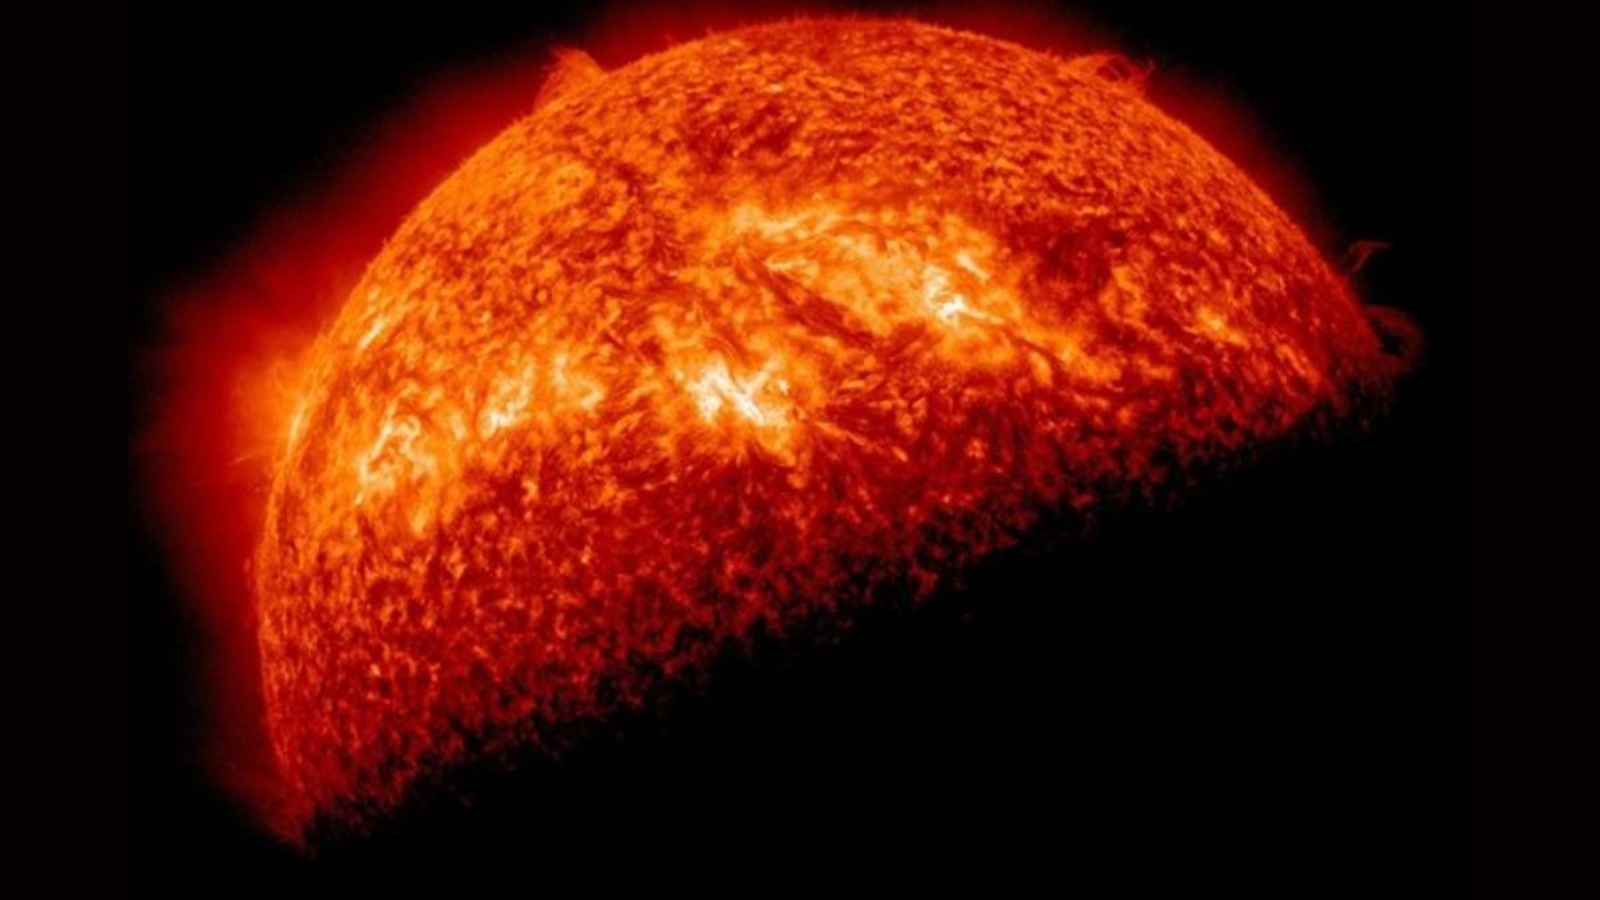 NASA viert het nieuwe jaar en publiceert een adembenemende foto van de zon die een zonnevlam uitspuwt